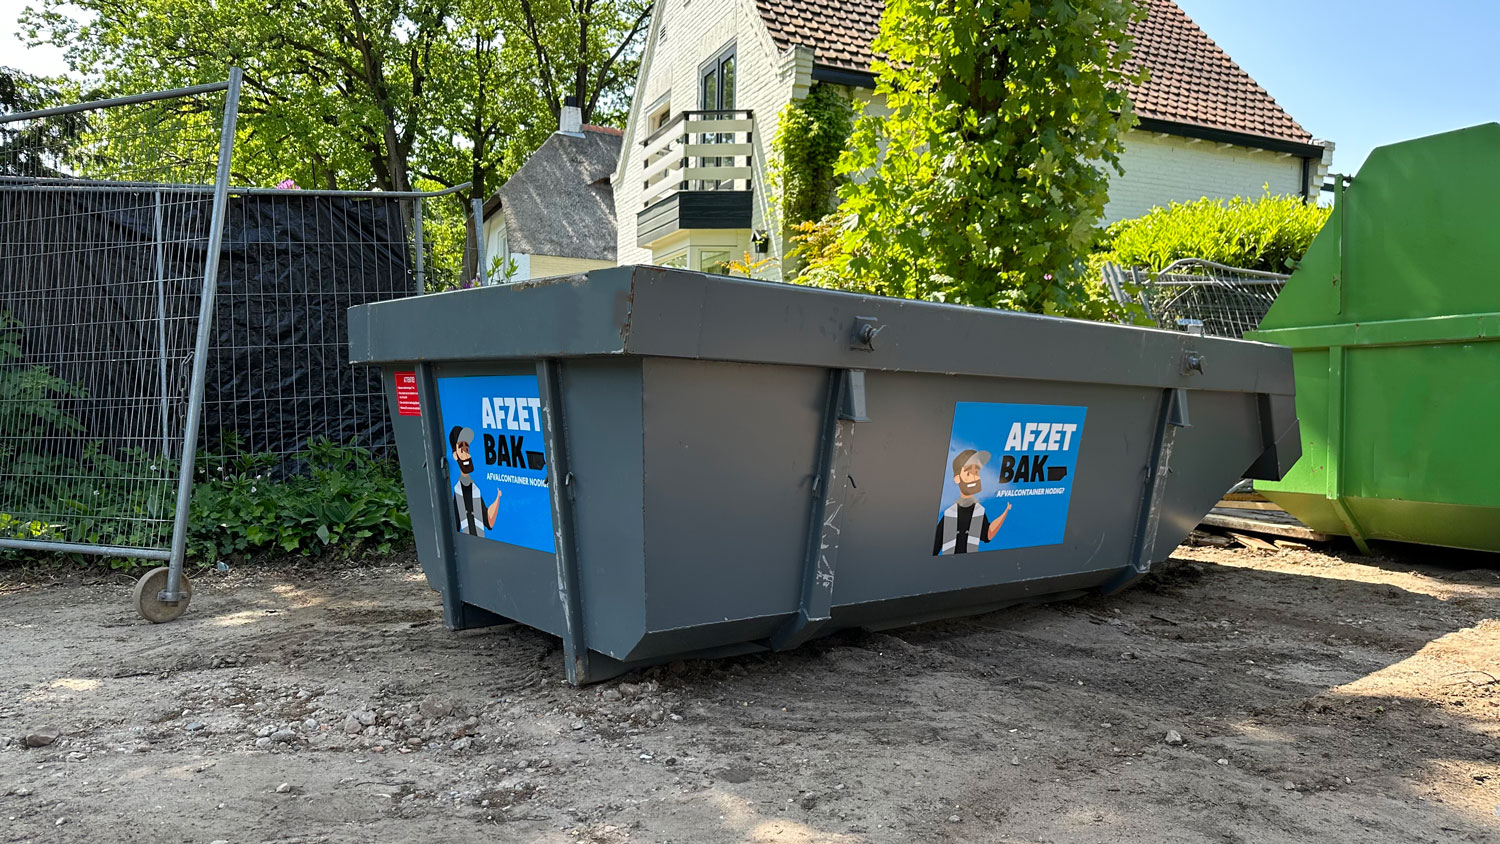 Geplaatste container van Afzetbak.nl